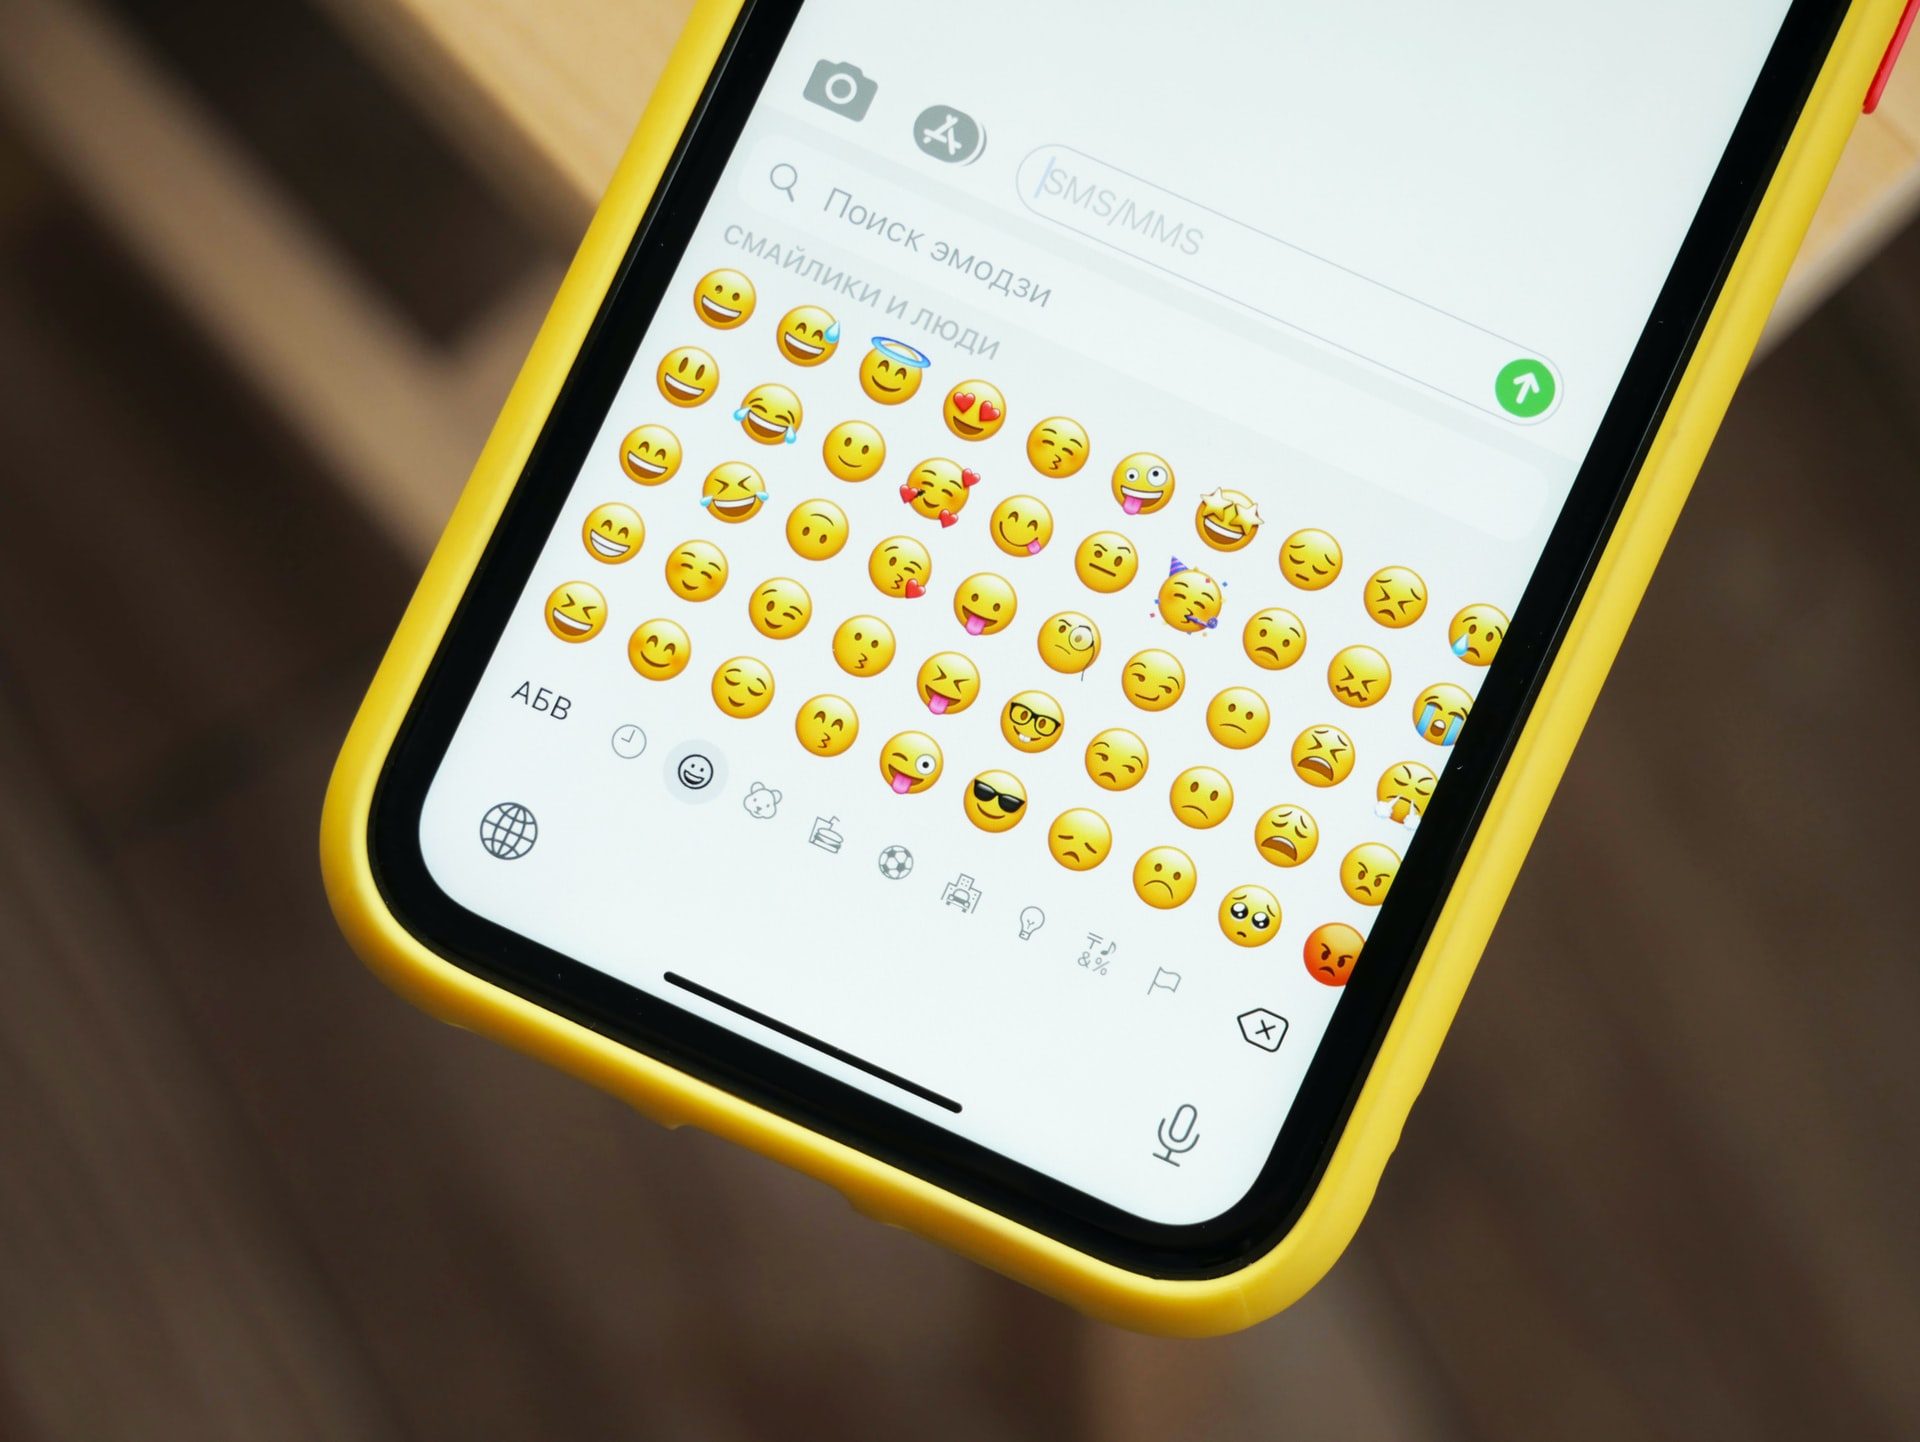 emojis denis cherkashin unsplash